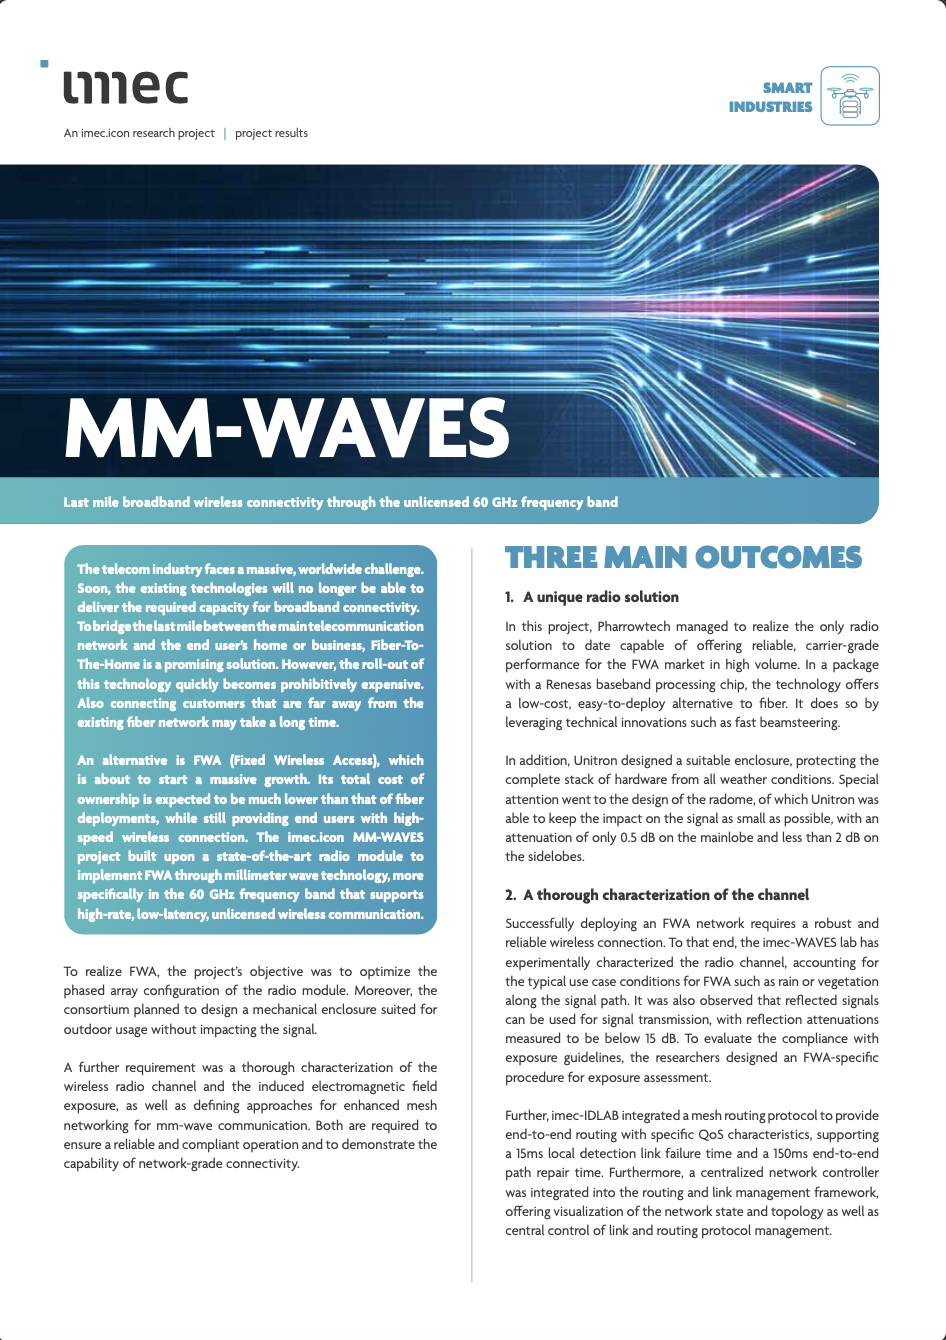 MM-waves leaflet